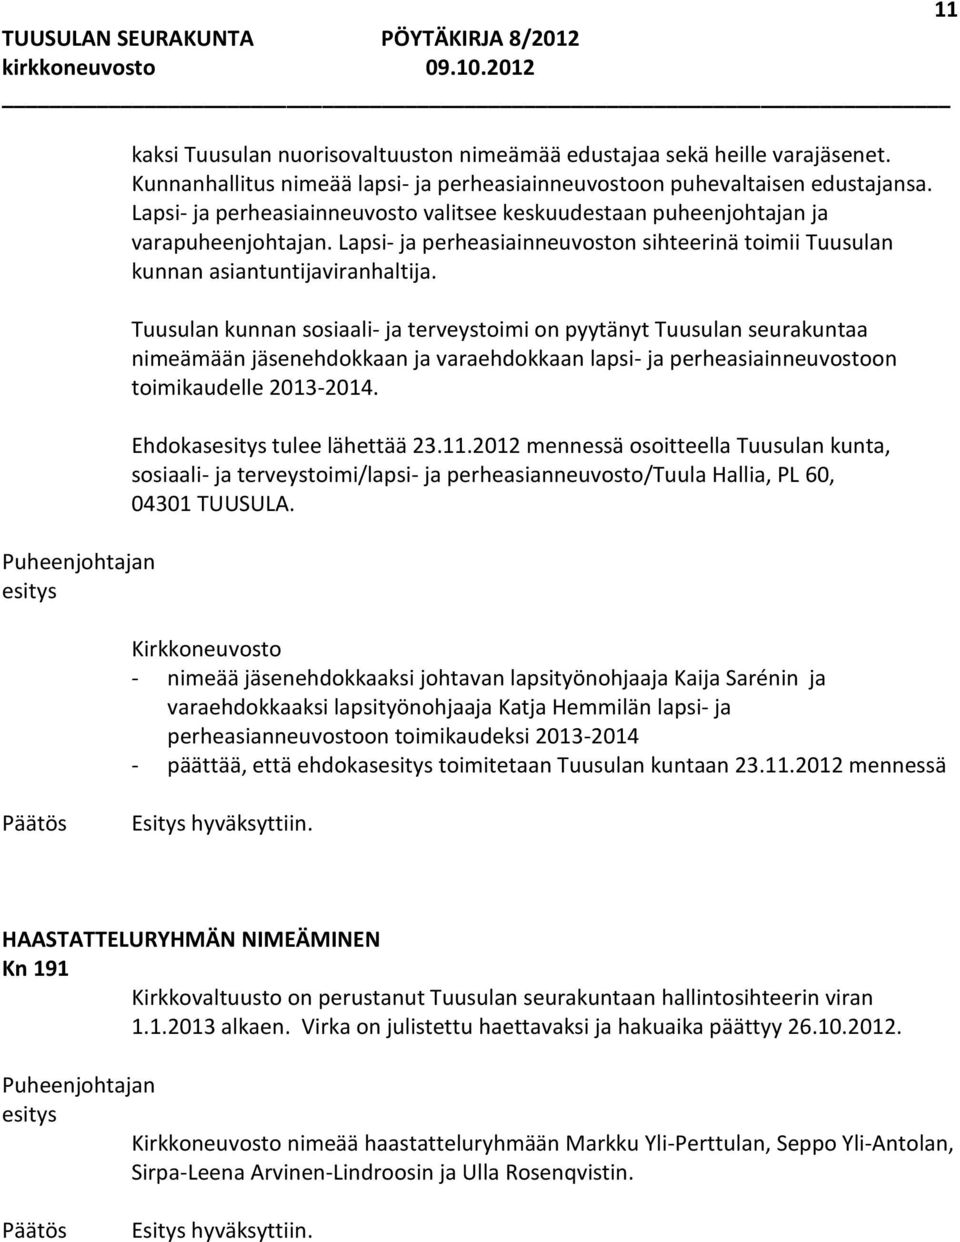 Tuusulan kunnan sosiaali- ja terveystoimi on pyytänyt Tuusulan seurakuntaa nimeämään jäsenehdokkaan ja varaehdokkaan lapsi- ja perheasiainneuvostoon toimikaudelle 2013-2014. Ehdokas tulee lähettää 23.